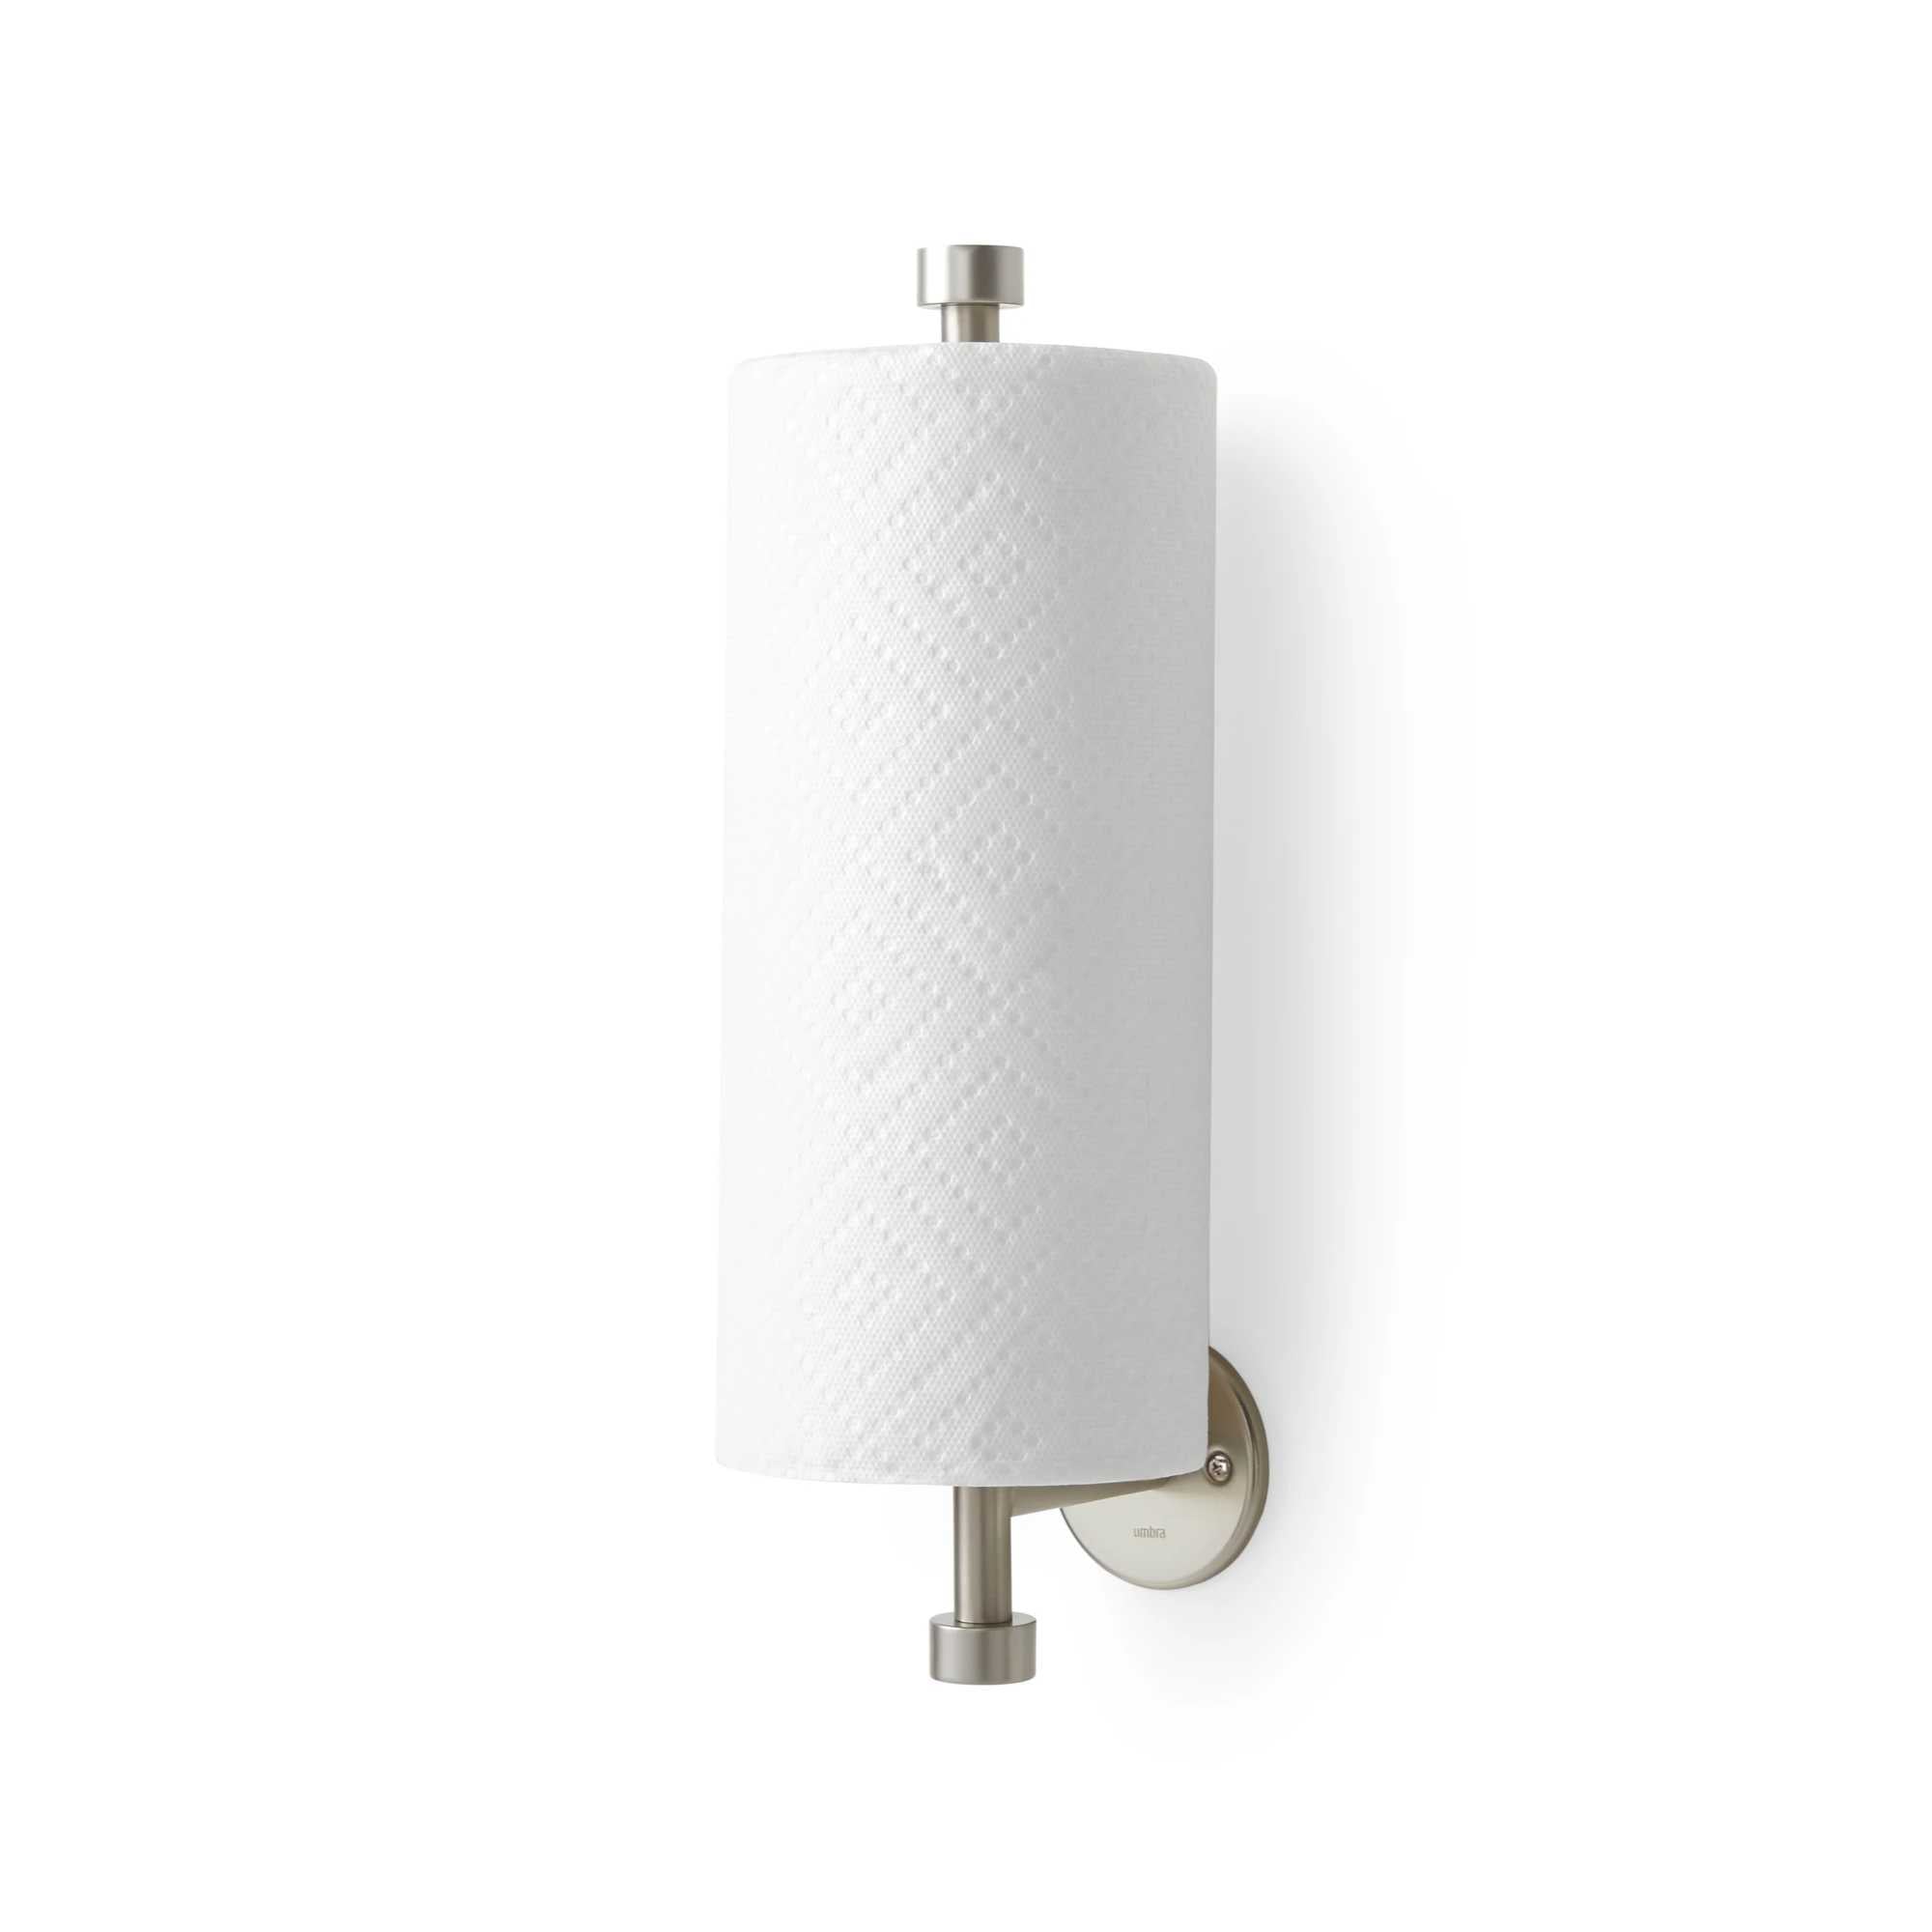 Umbra Wall Mount Paper Towel Holder